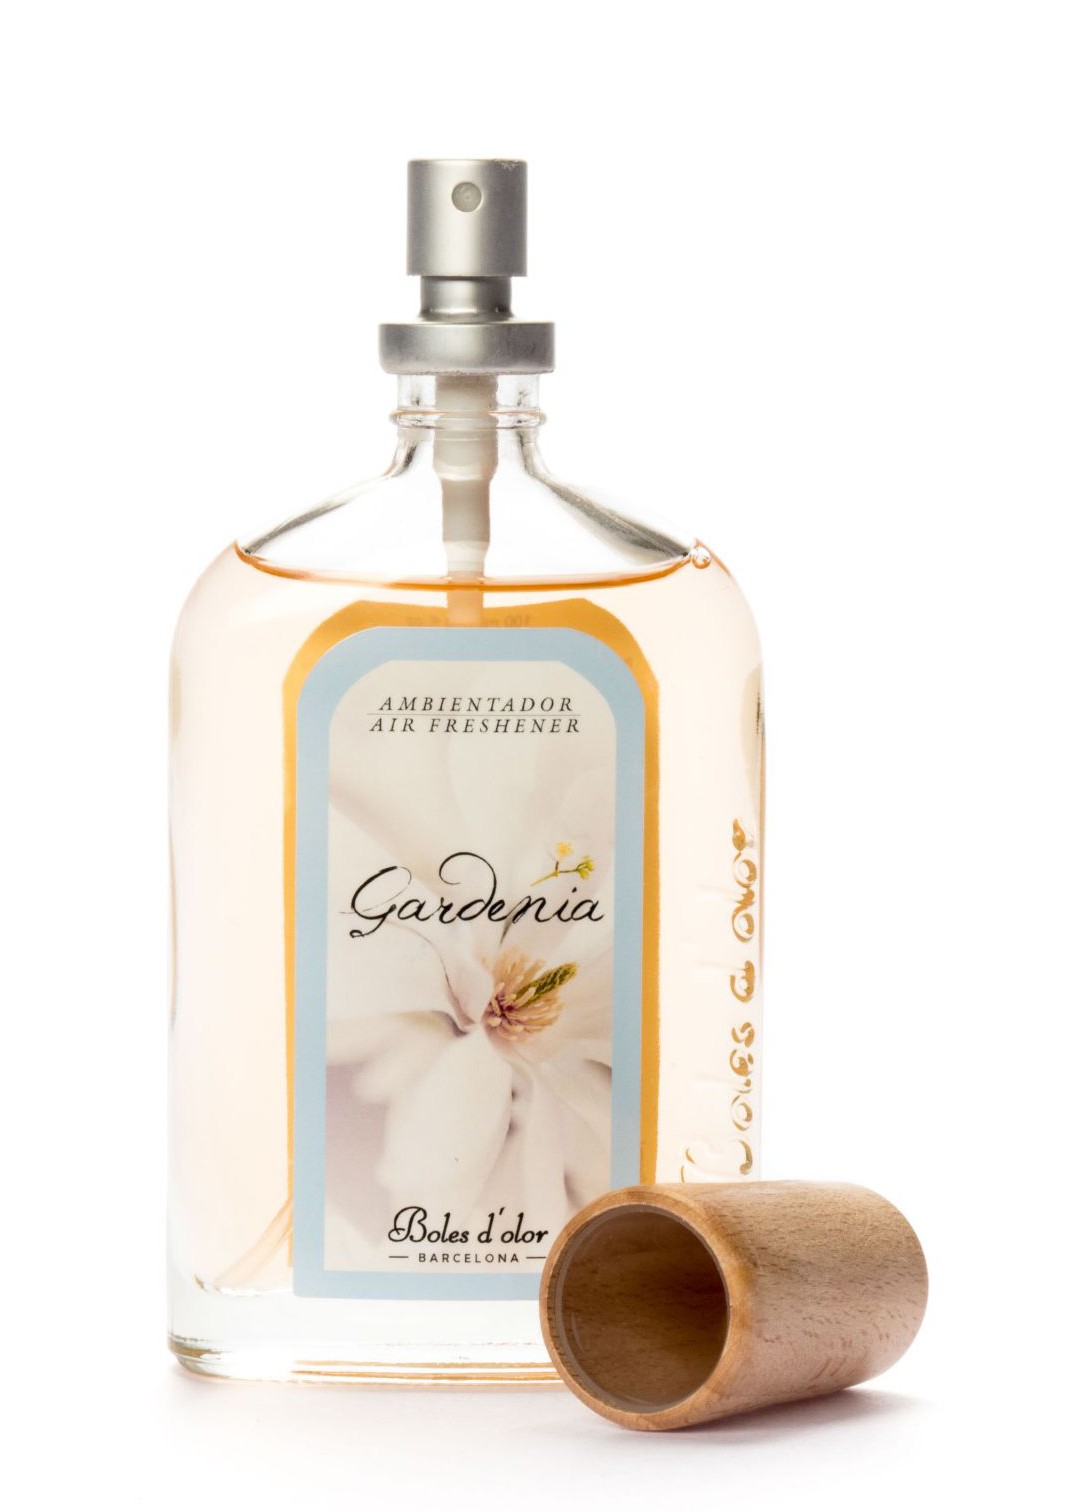 Ambientador Spray Gardenia, Boles d`olor.